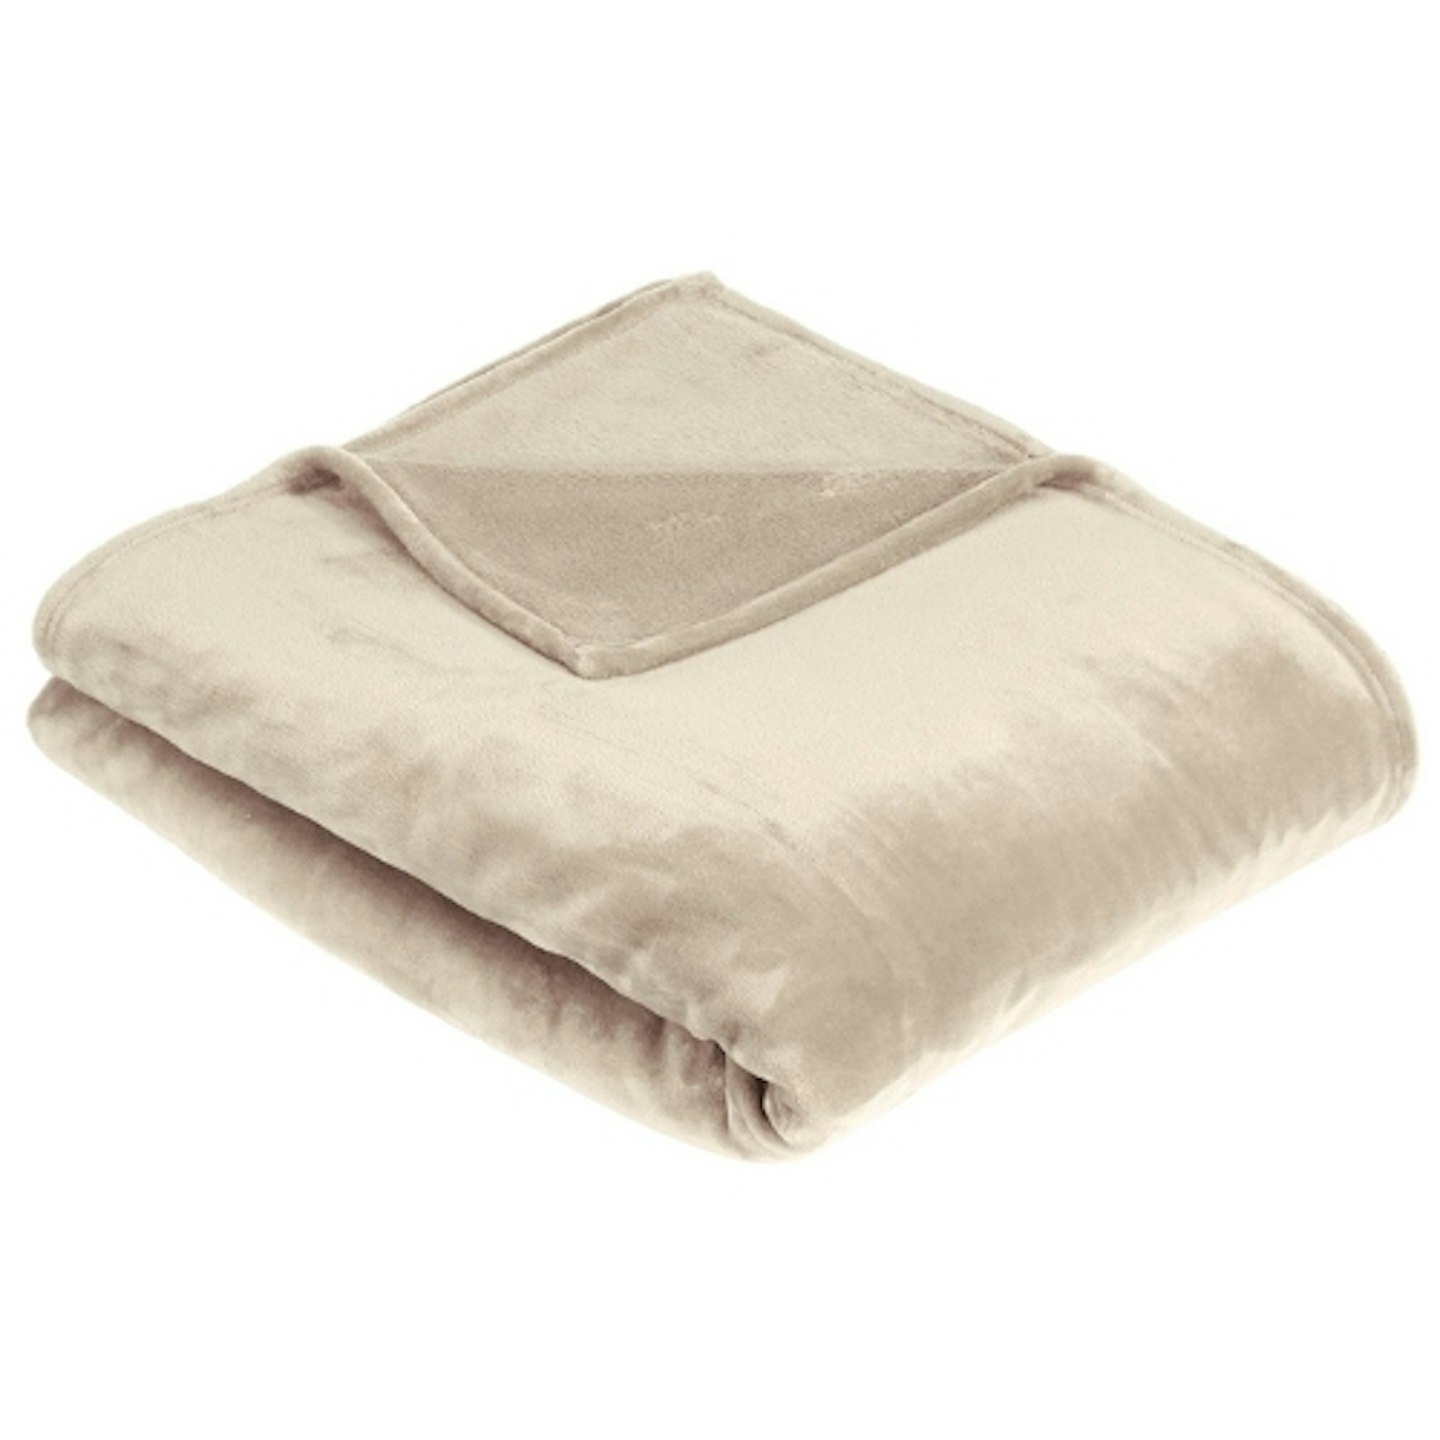 Amazon Basics Cuddly Fleece Blanket, Velvety Plush